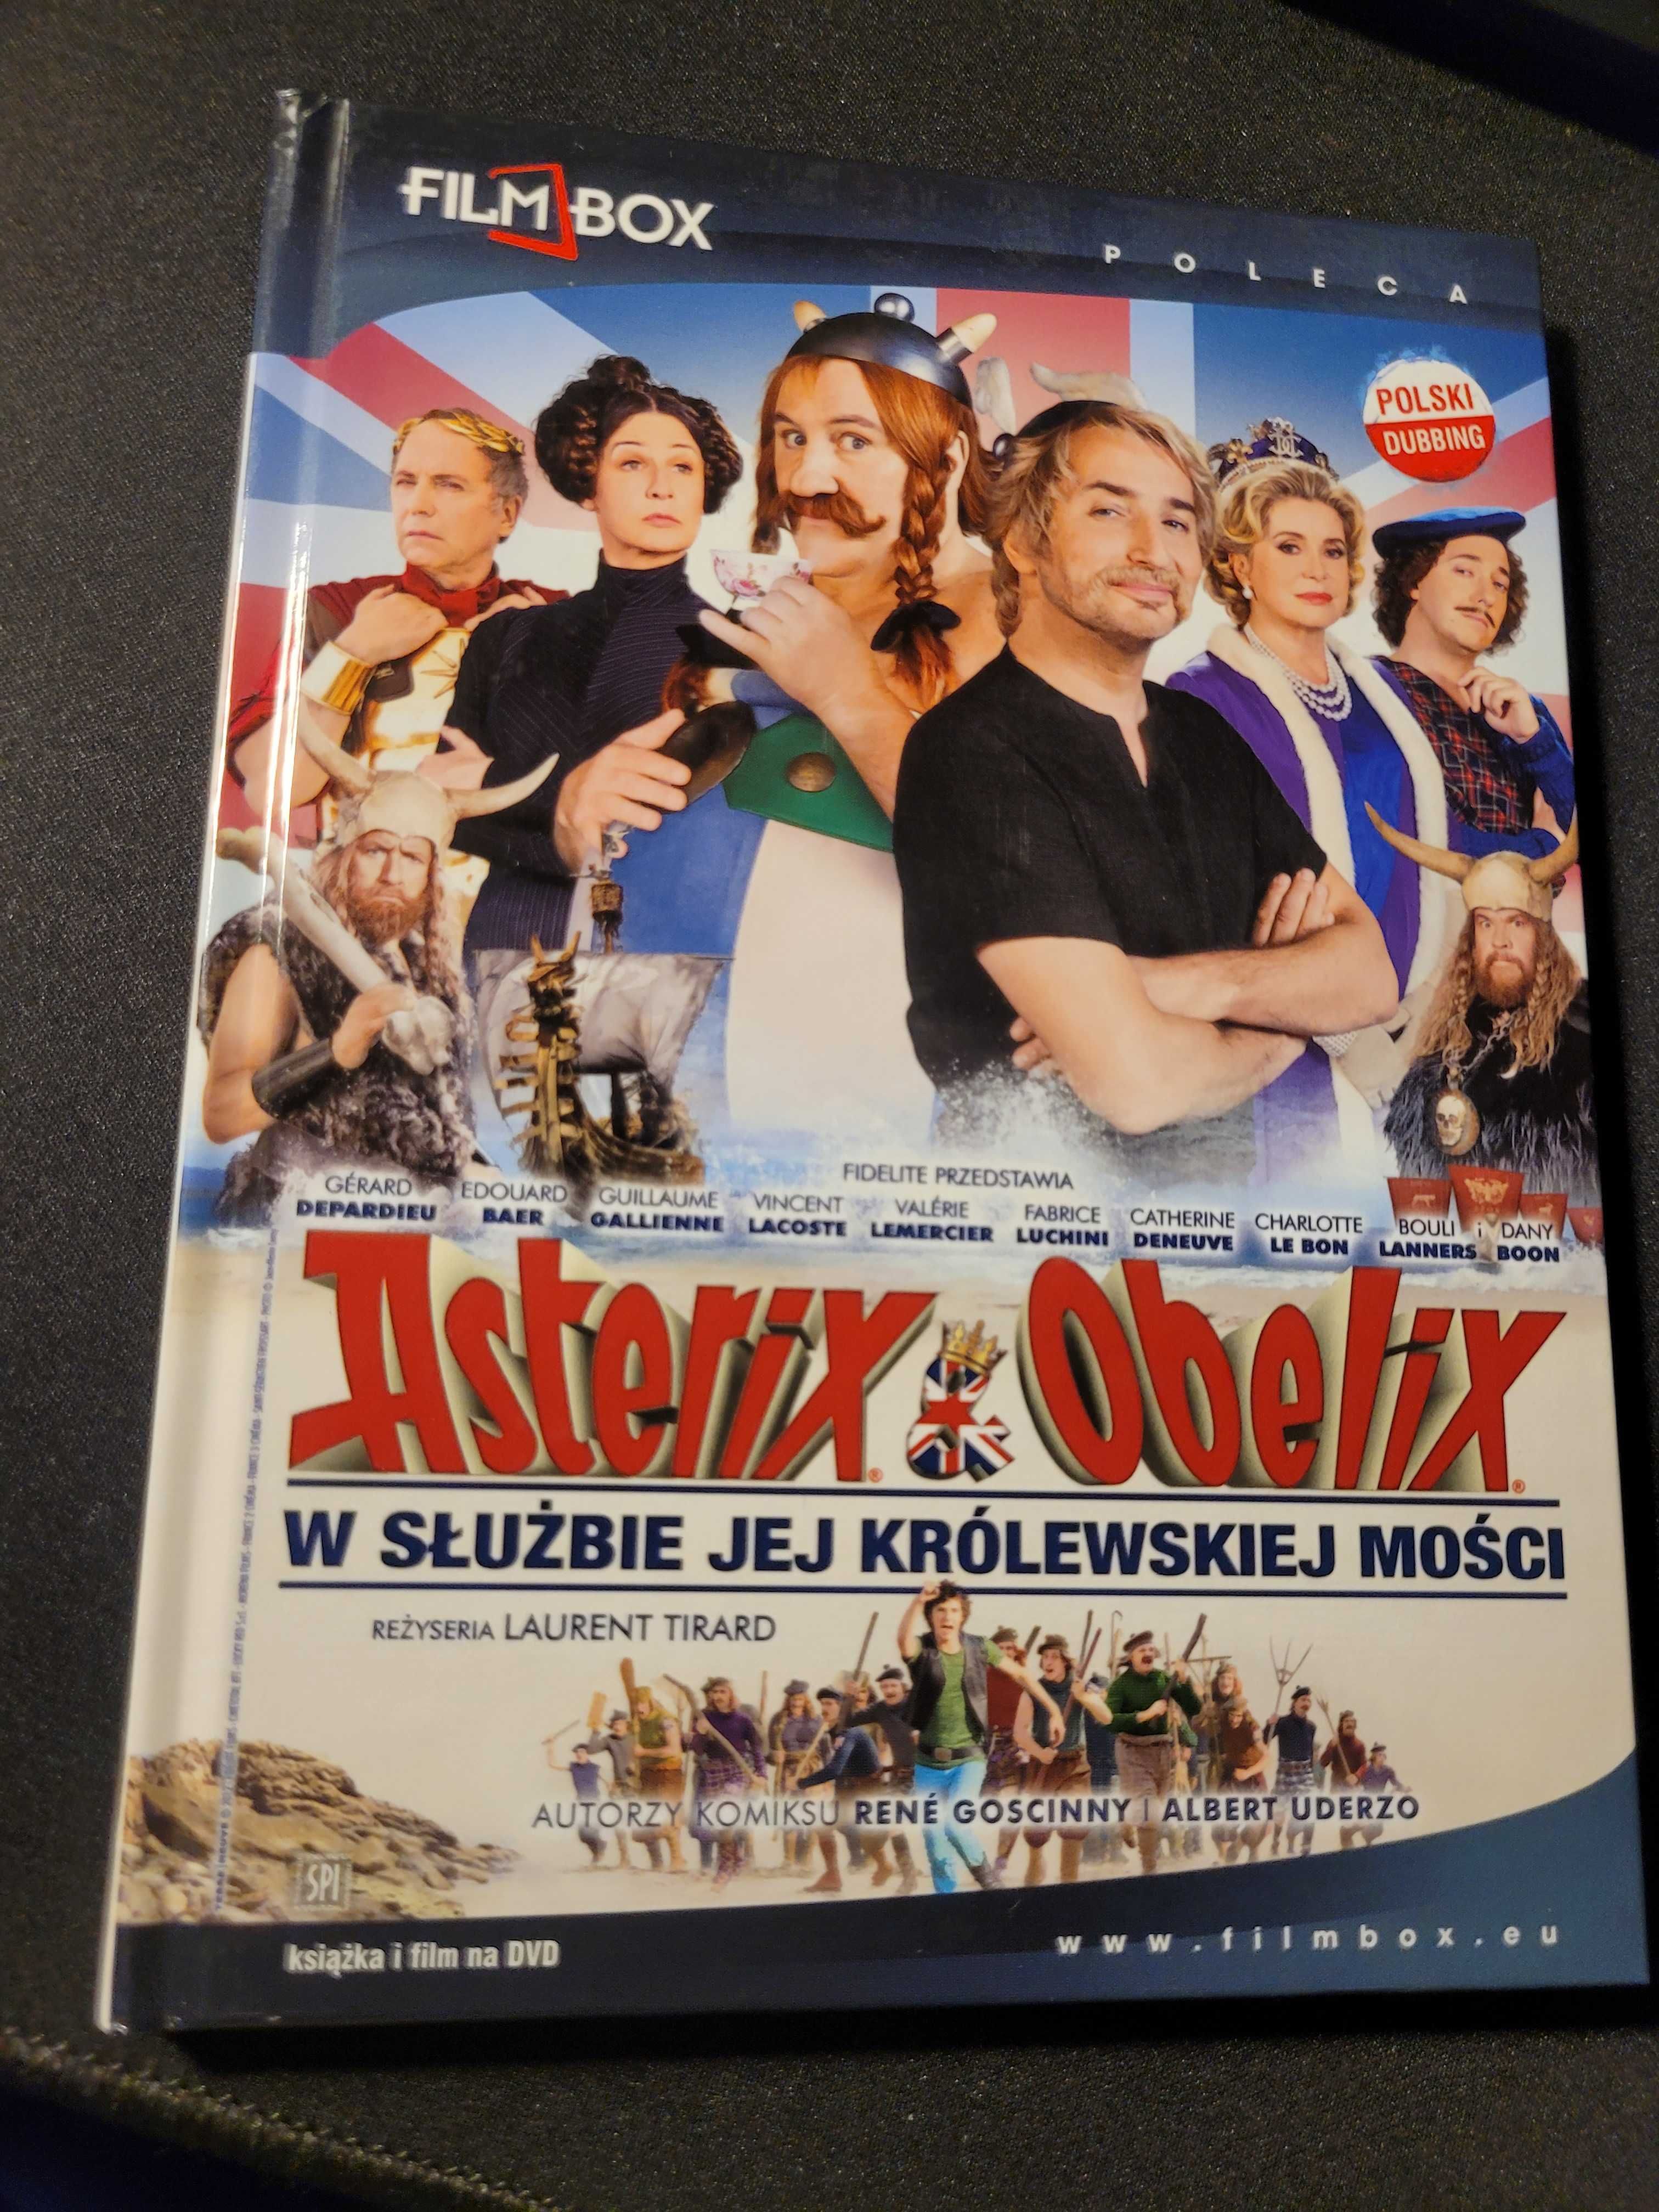 Film "Asterix i Obelix w służbie jej królewskiej mości" DVD